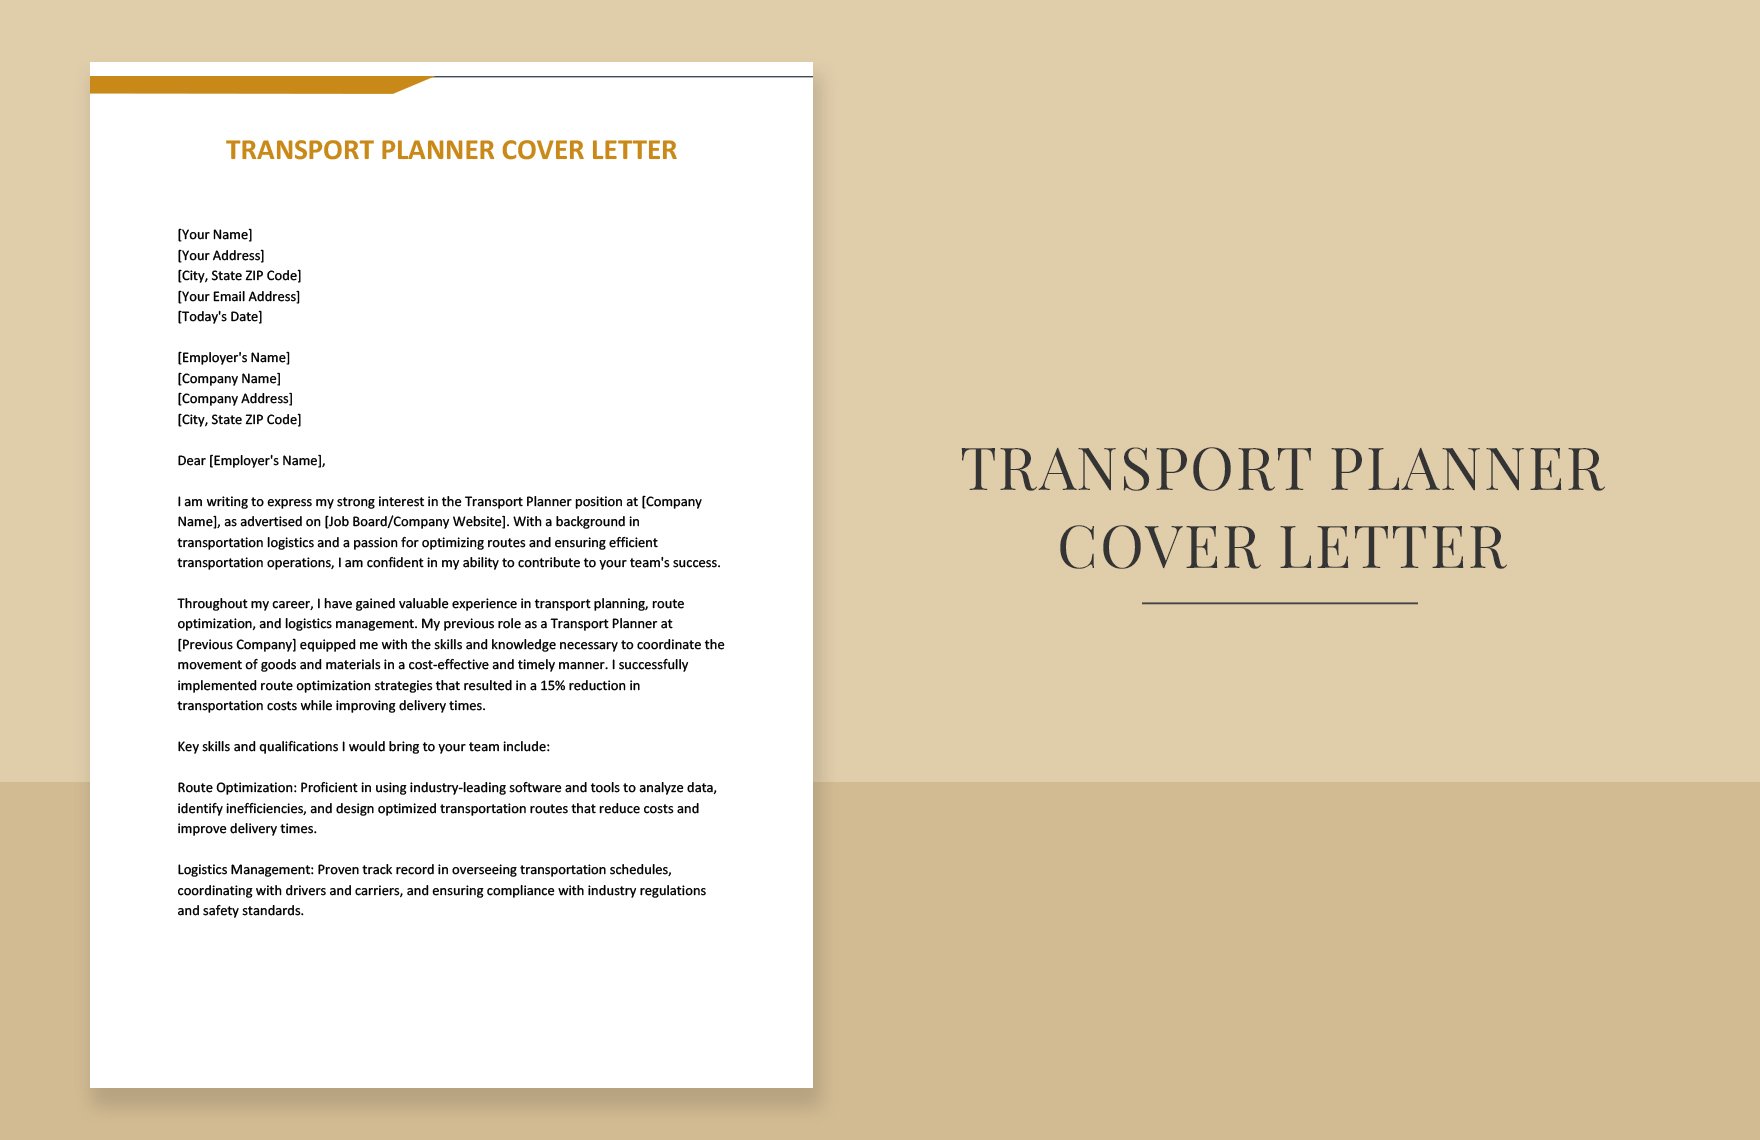 Transport Planner Cover Letter